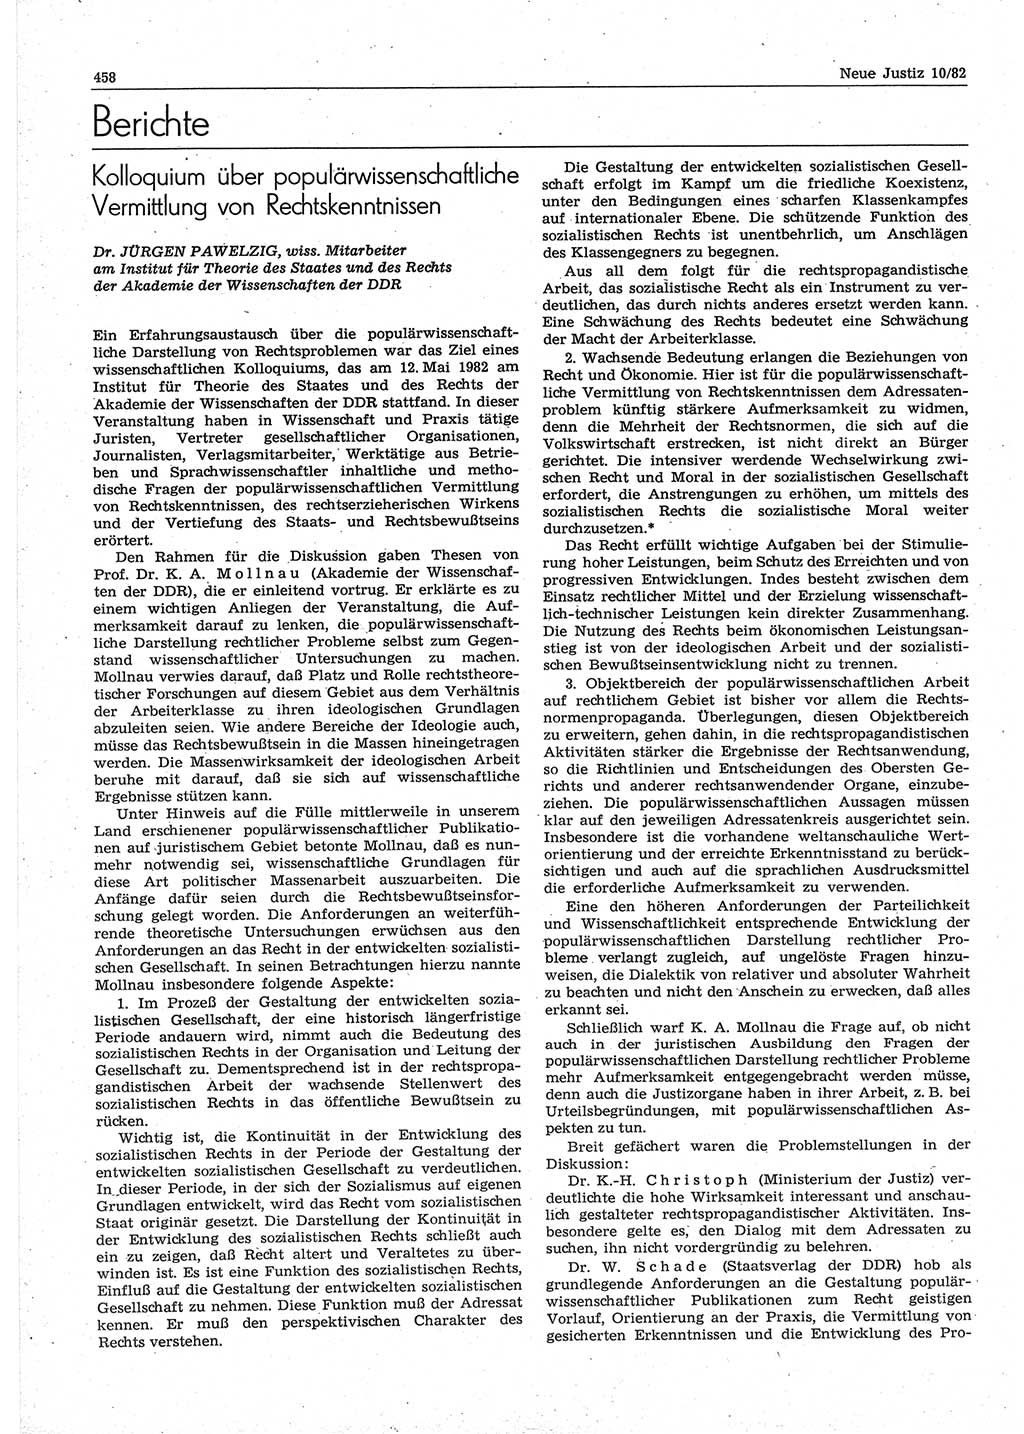 Neue Justiz (NJ), Zeitschrift für sozialistisches Recht und Gesetzlichkeit [Deutsche Demokratische Republik (DDR)], 36. Jahrgang 1982, Seite 458 (NJ DDR 1982, S. 458)